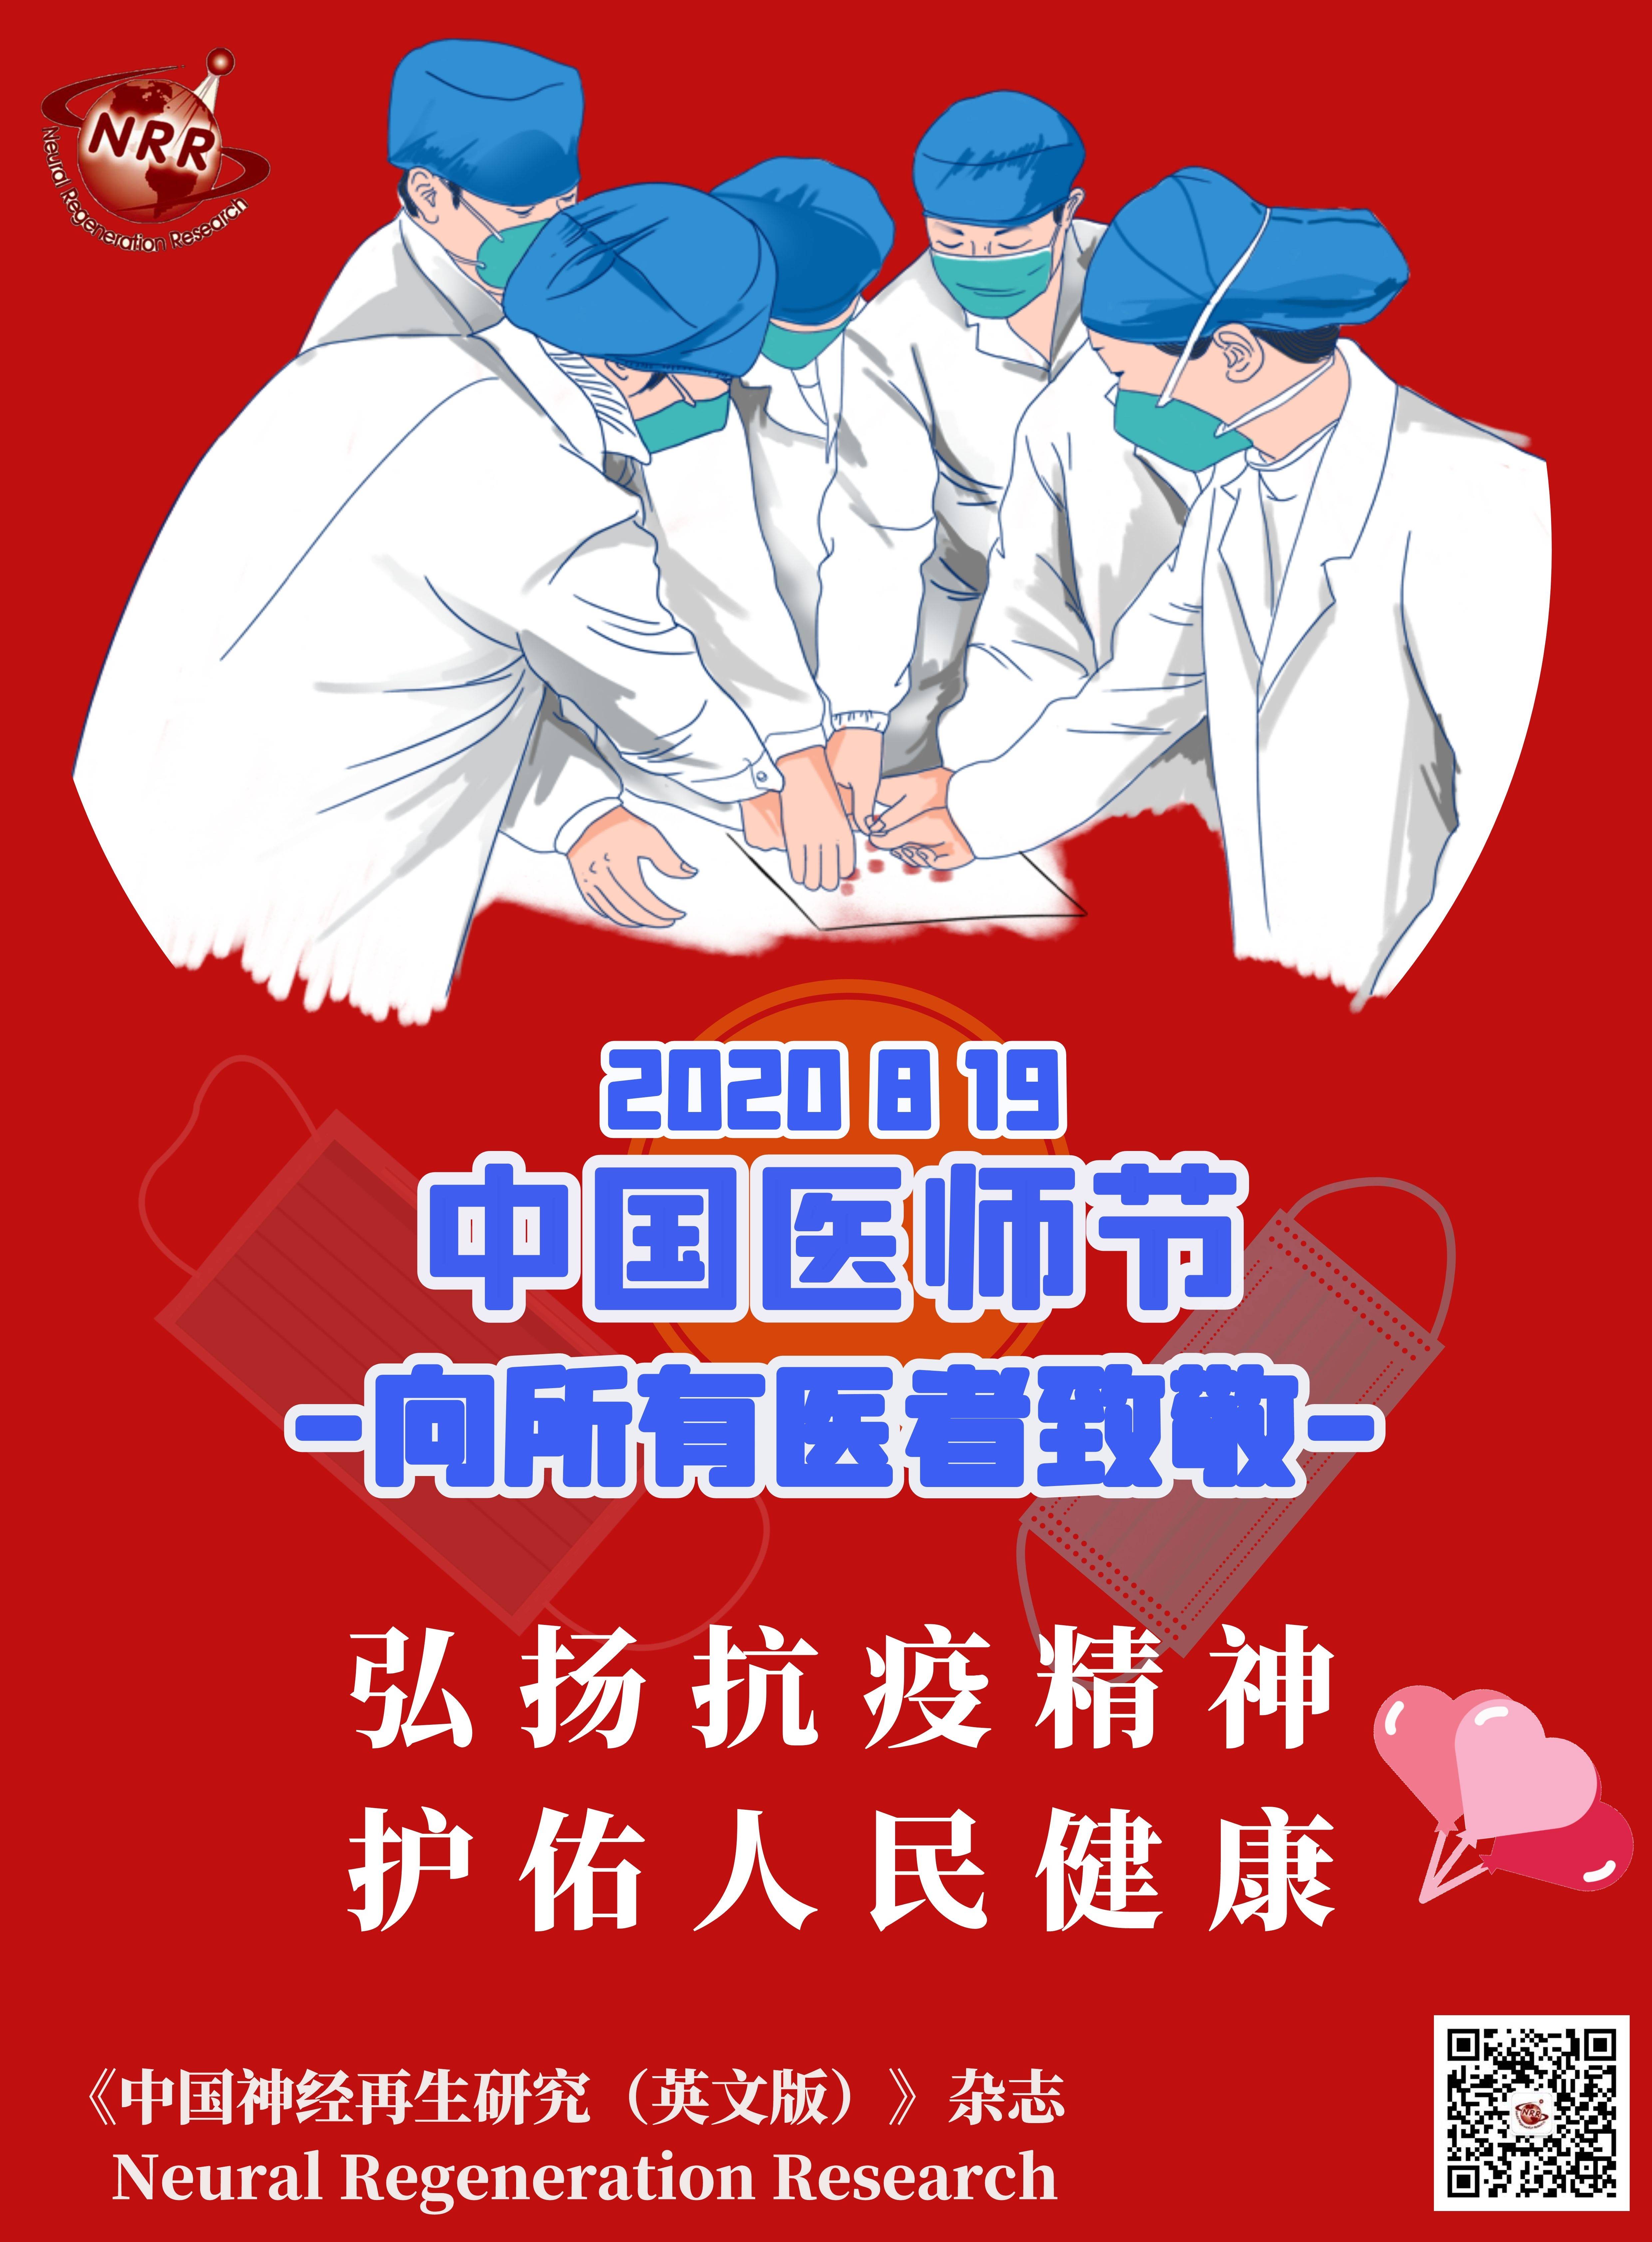 2021中国医师节海报图片